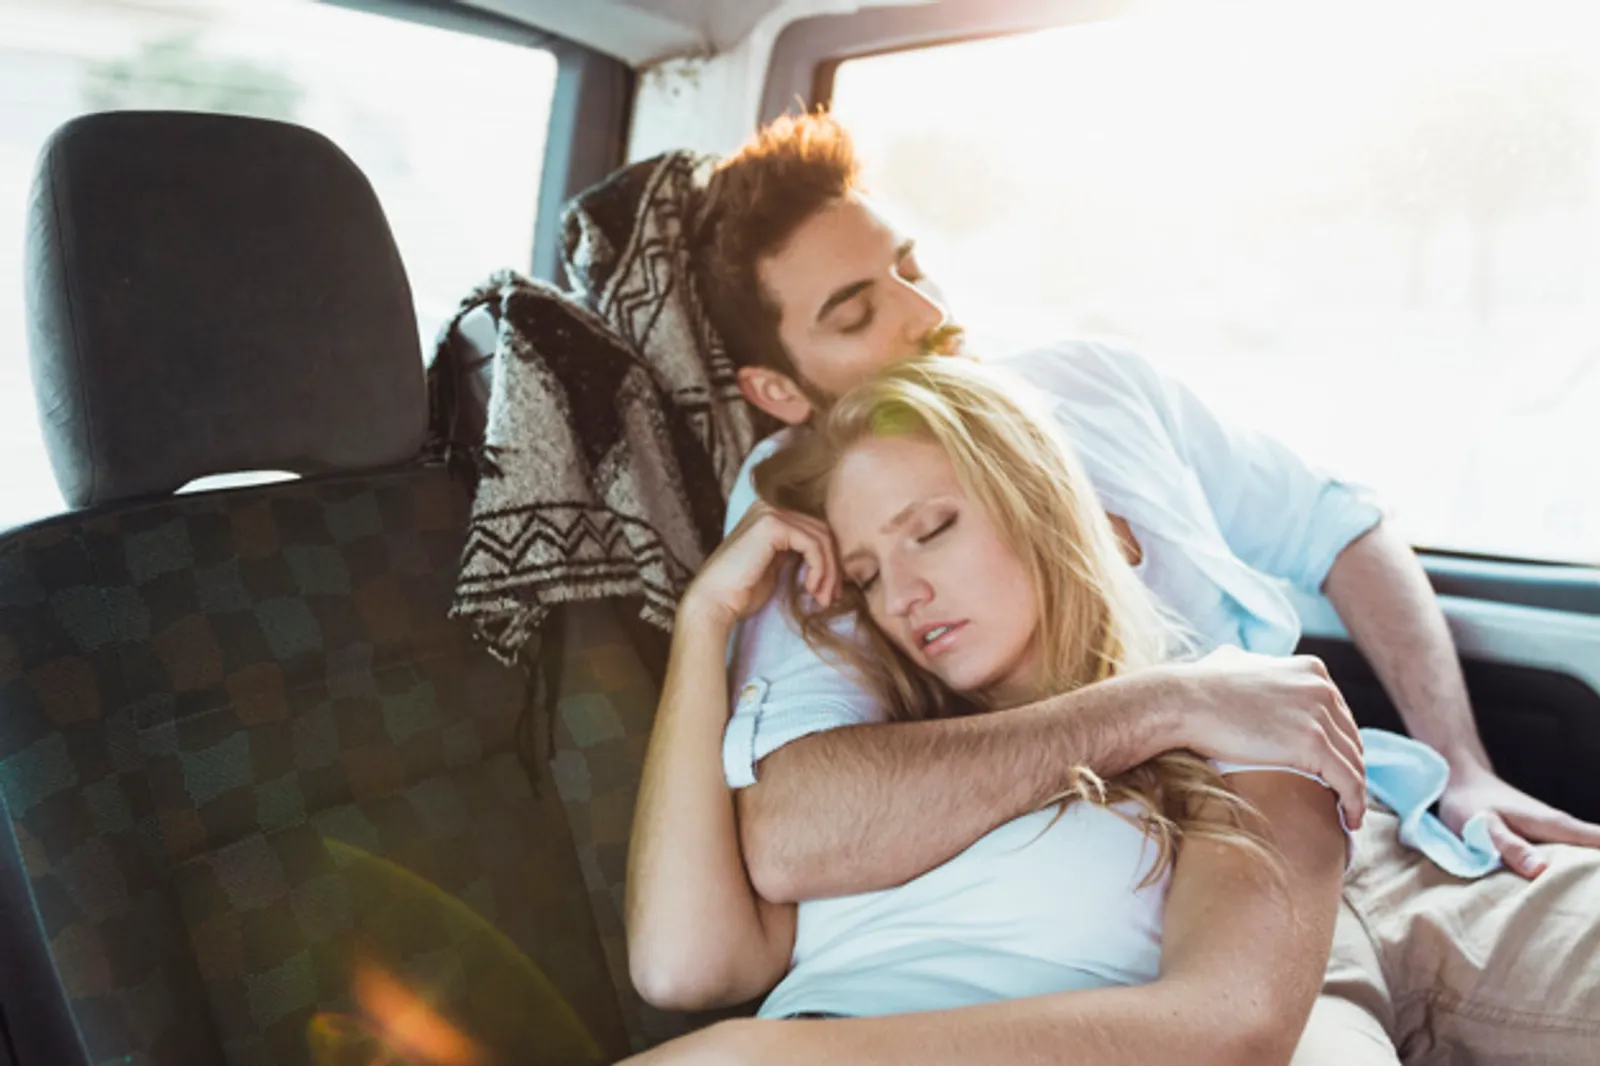 10 Ide Kegiatan Romantis yang Bisa Dilakukan Saat Bulan Madu